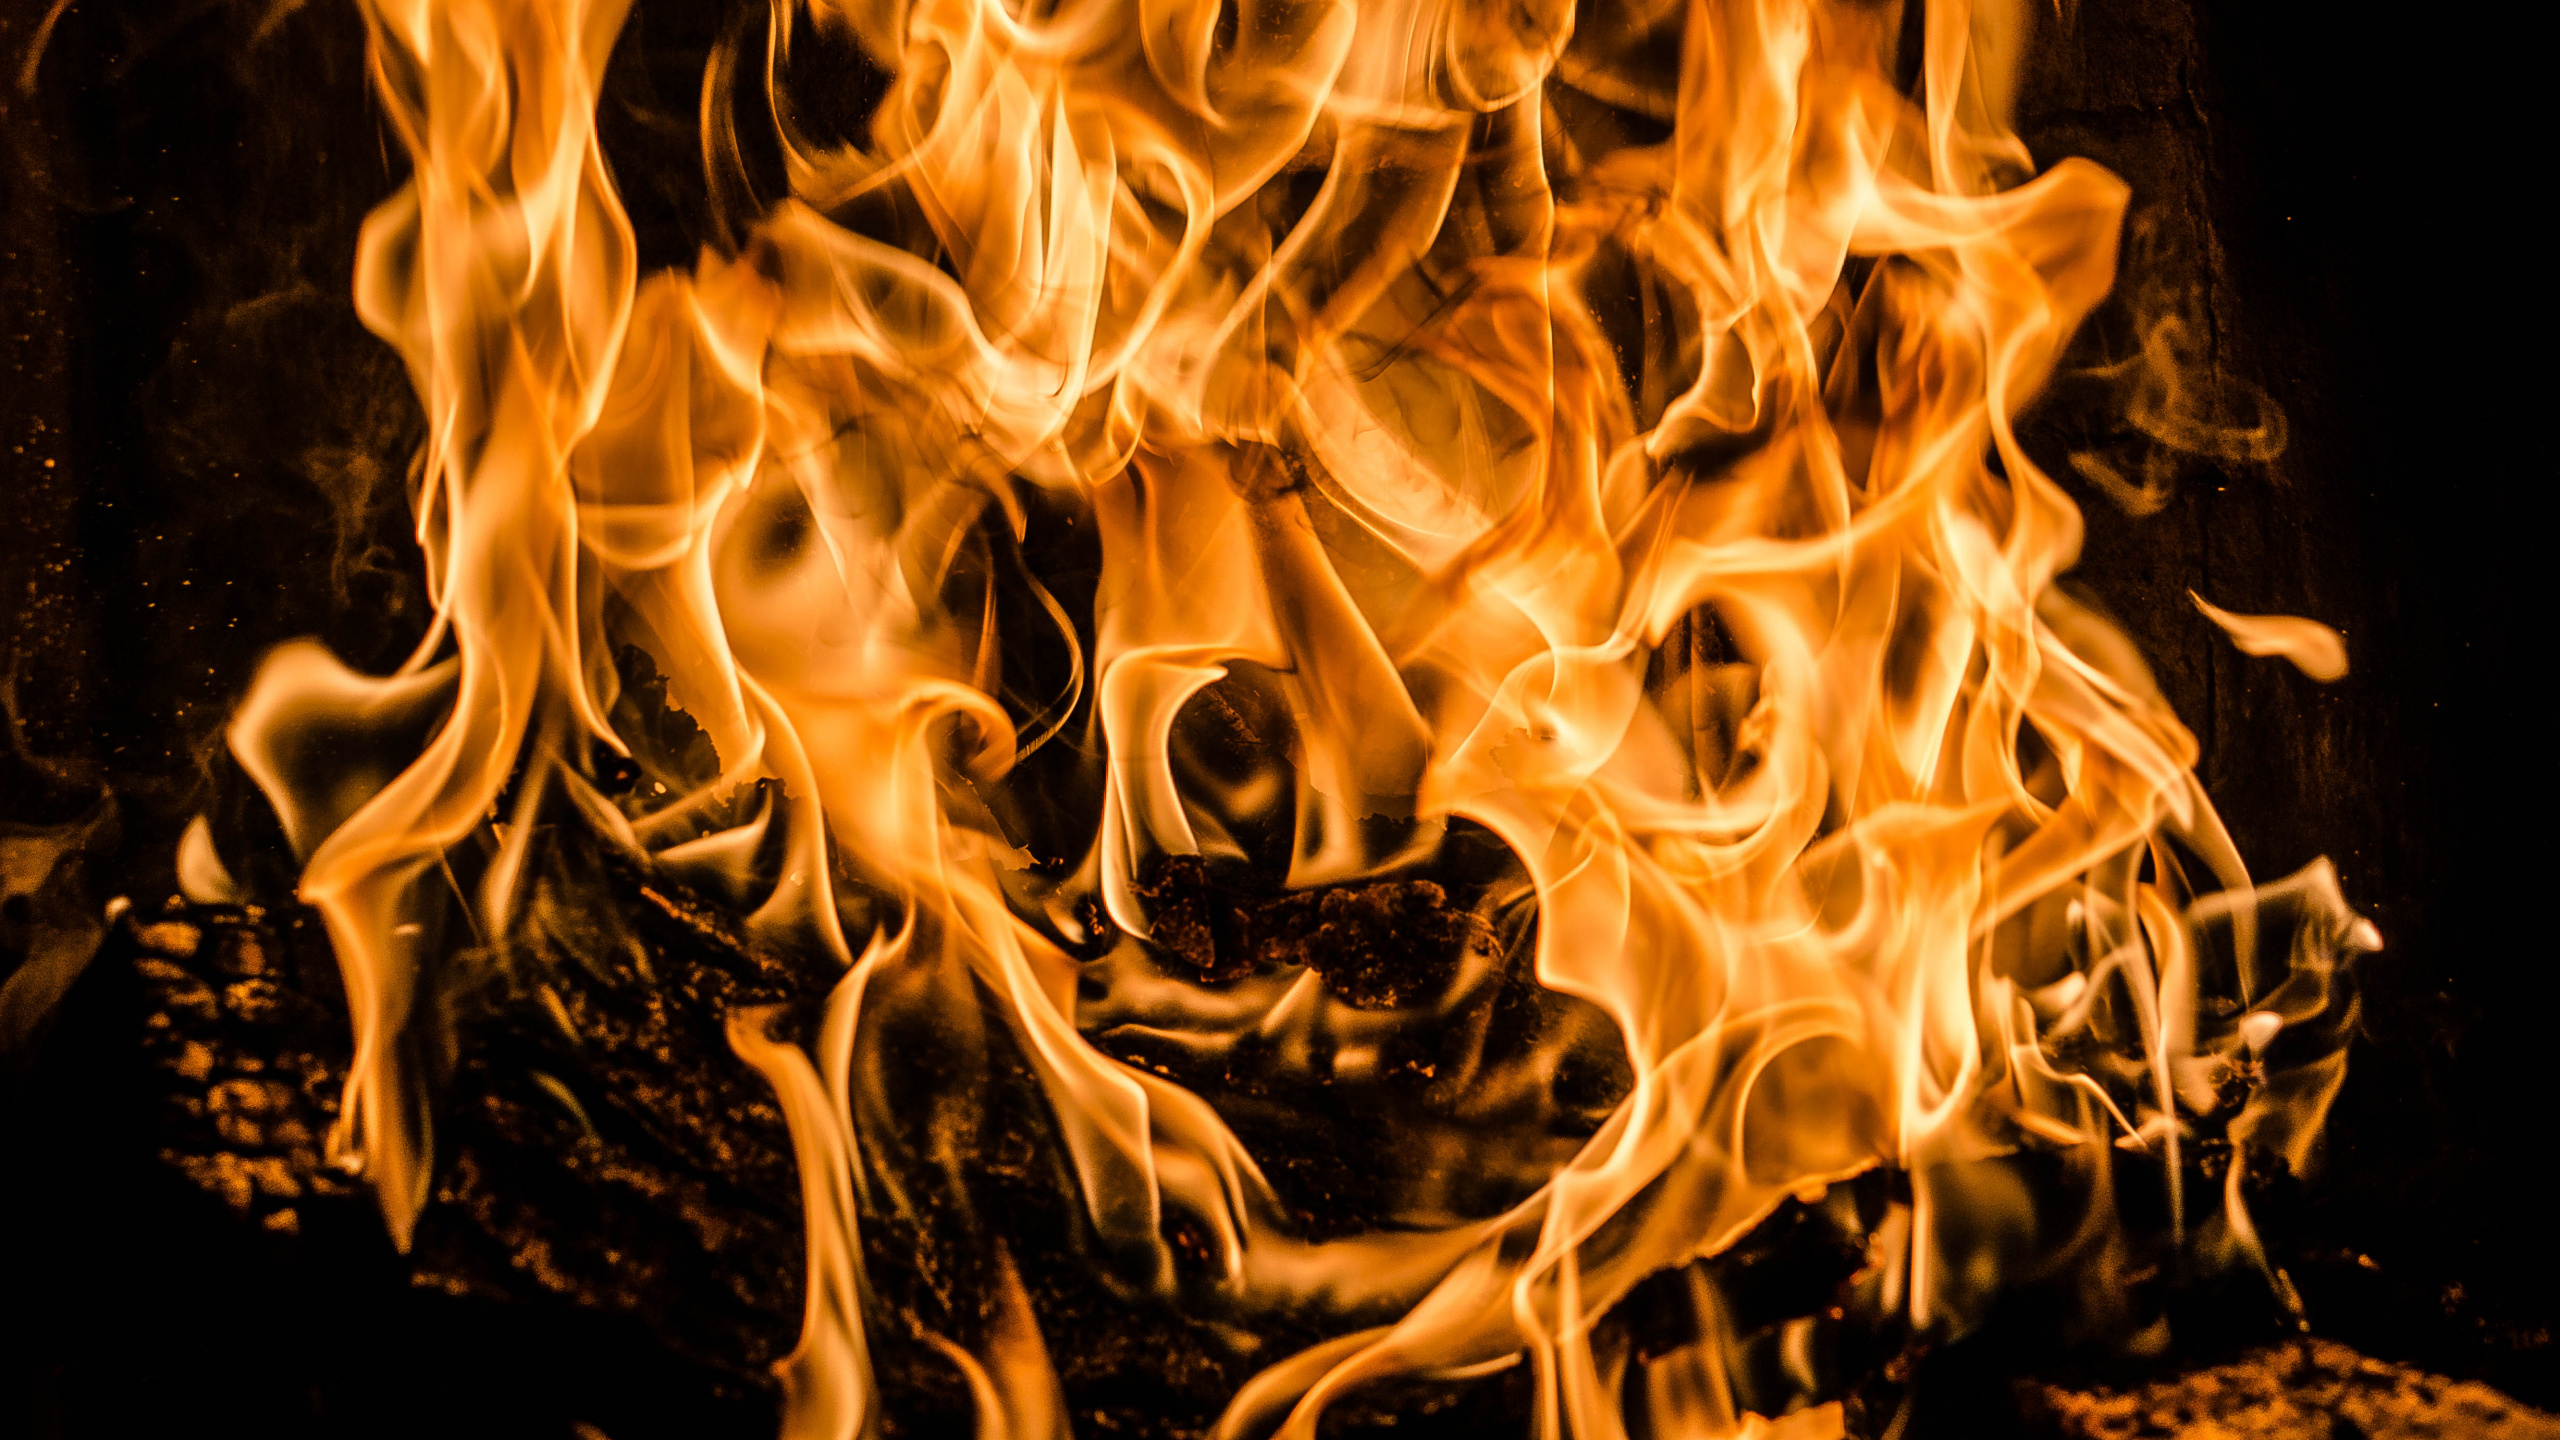 火焰, 热, 篝火 壁纸 2560x1440 允许